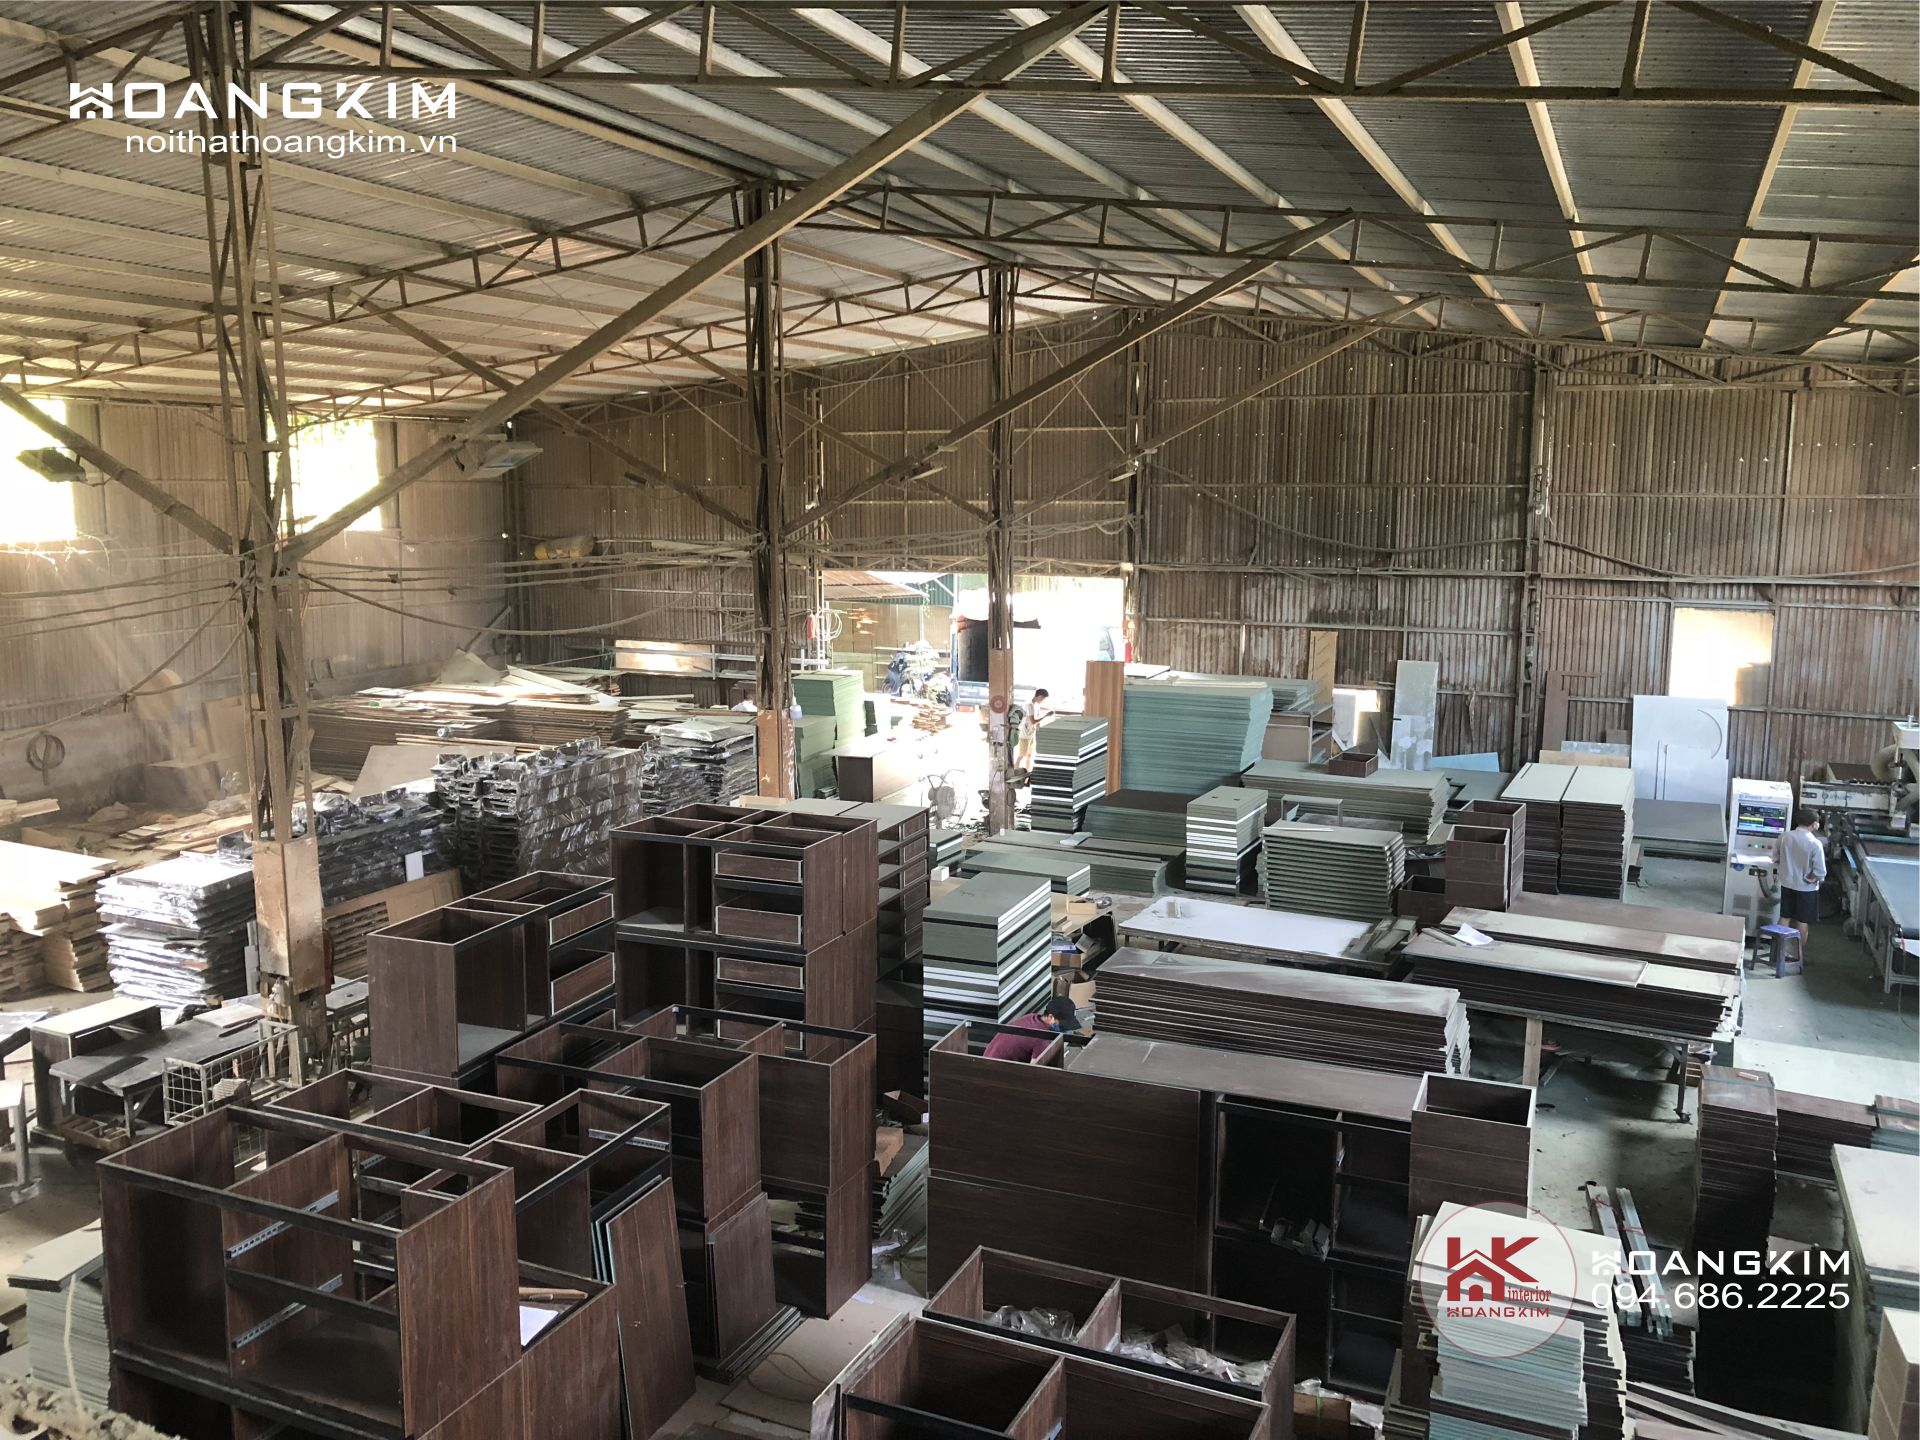 Xưởng sản xuất đồ gỗ công nghiệp tại Hà Nội